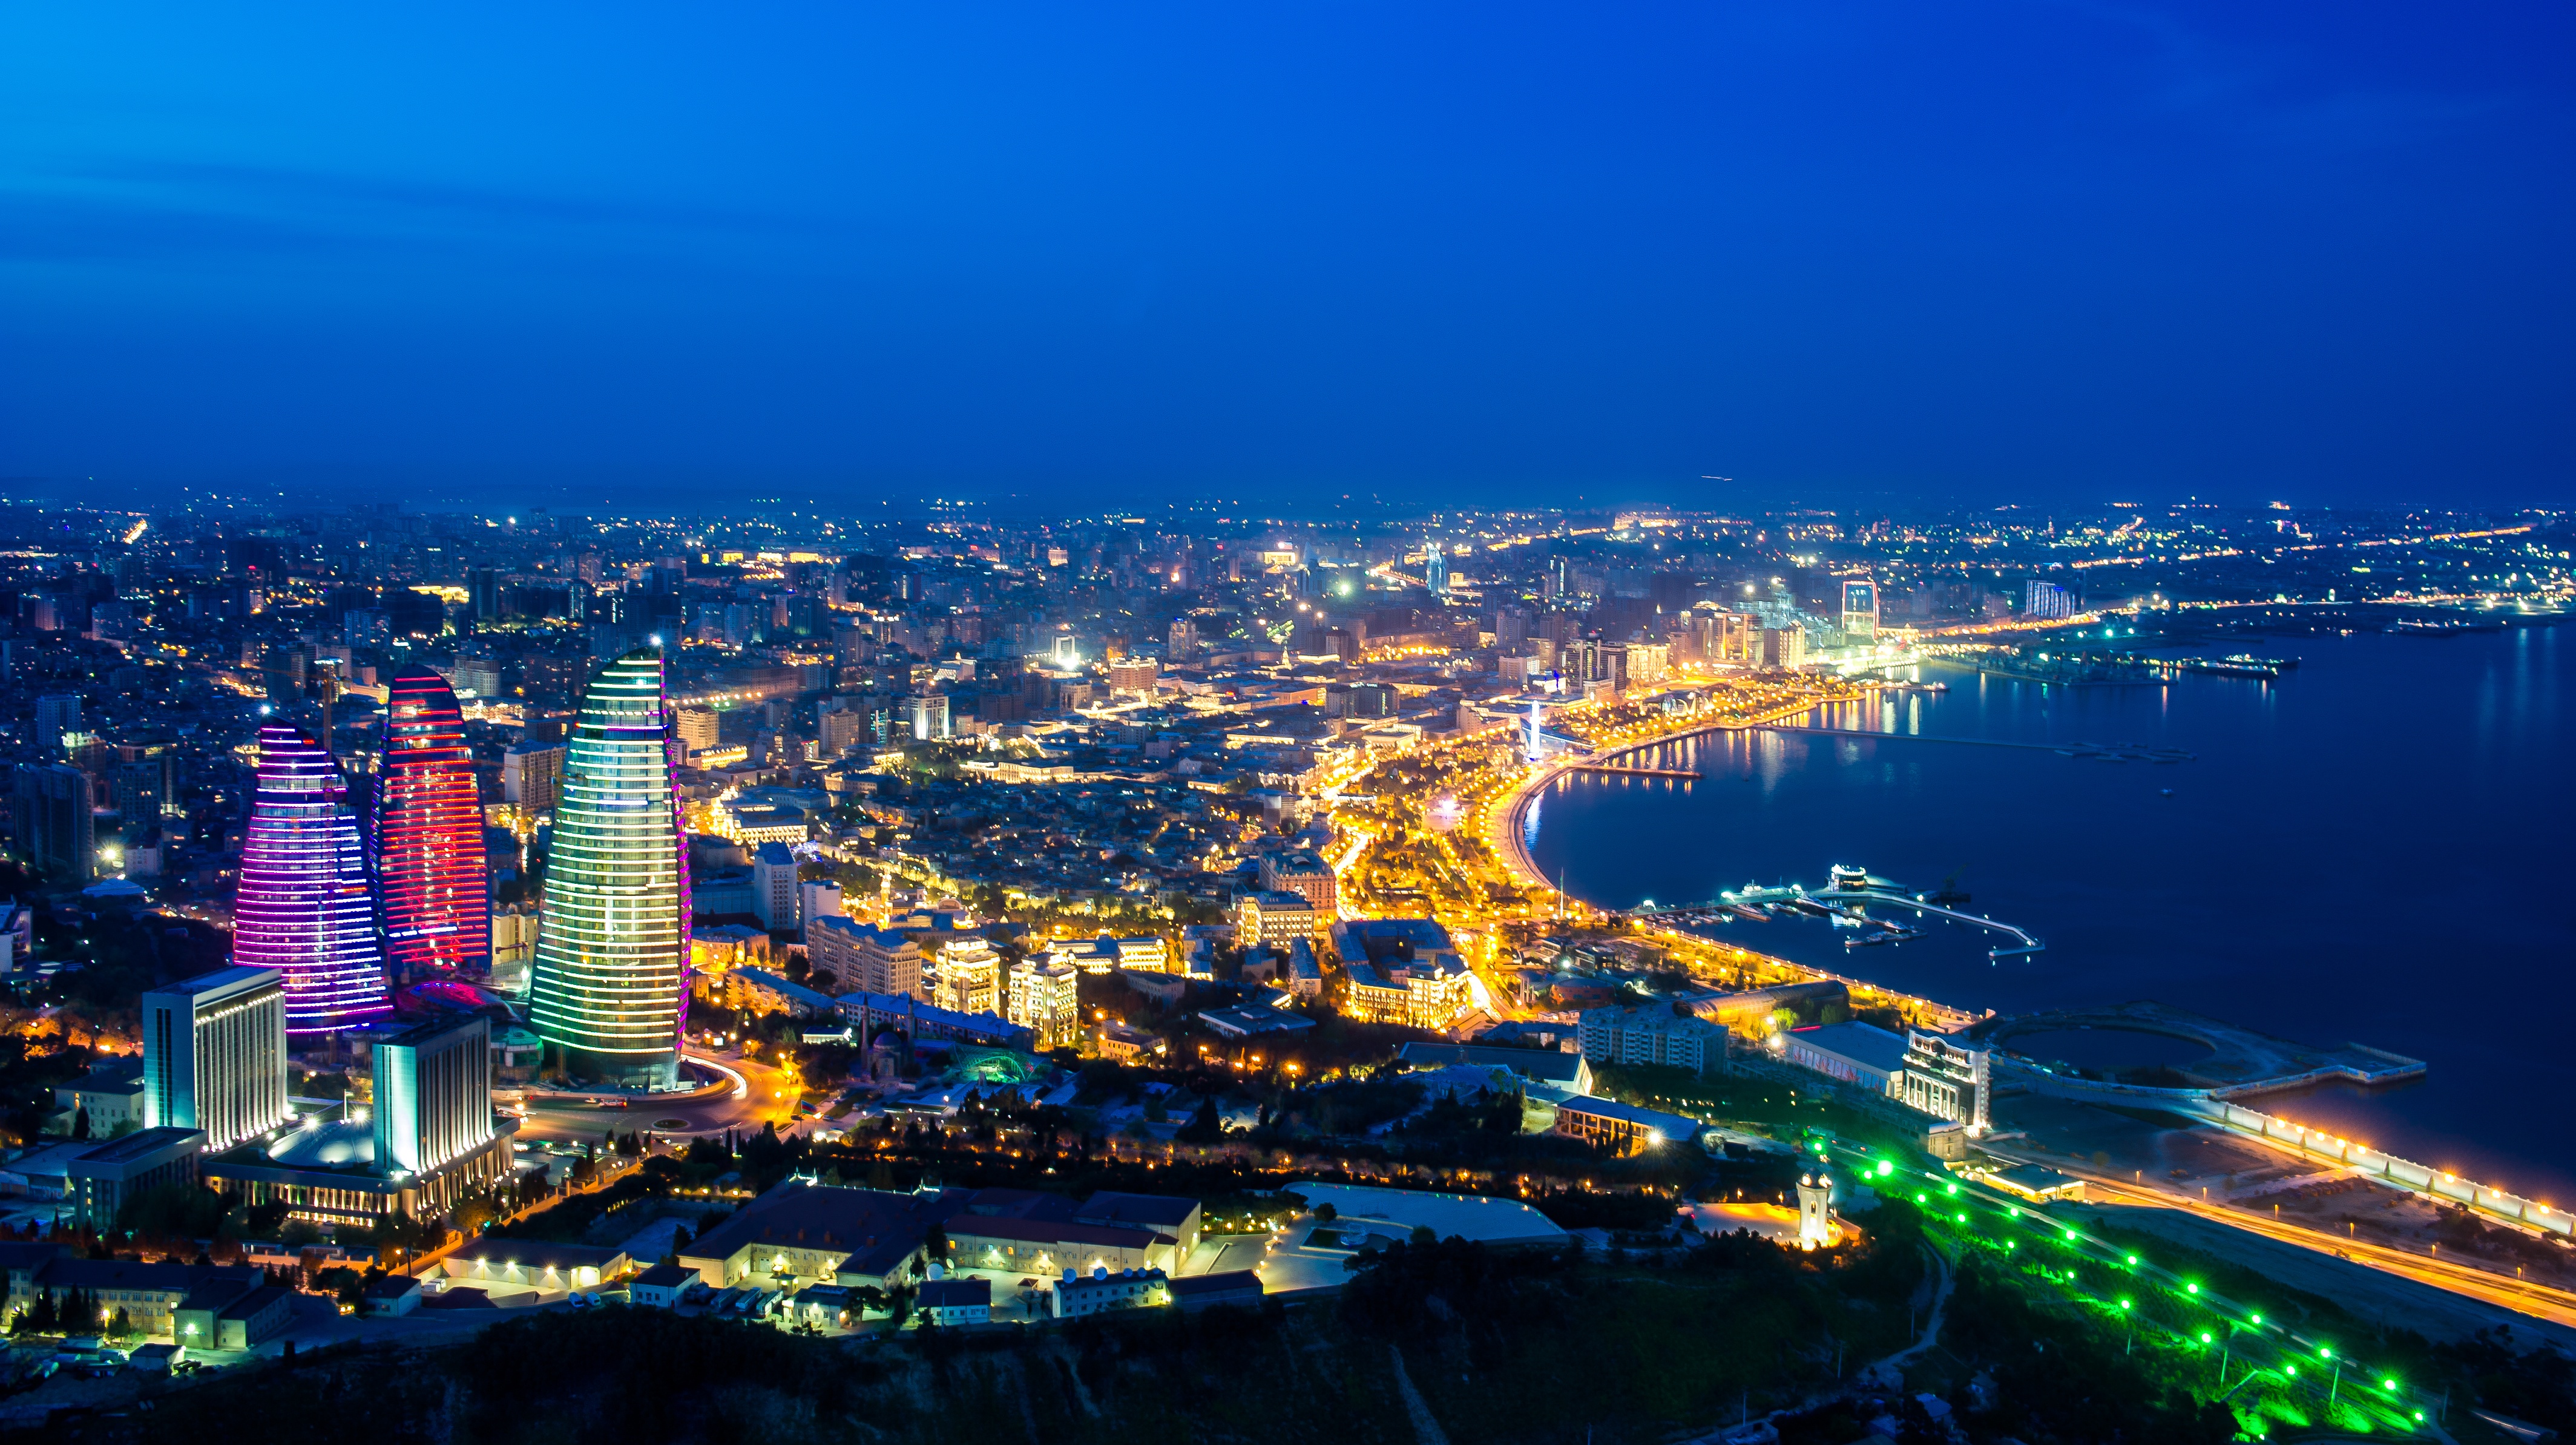 Azerbaijan Baku Flame Towers Night Panorama 4256x2387